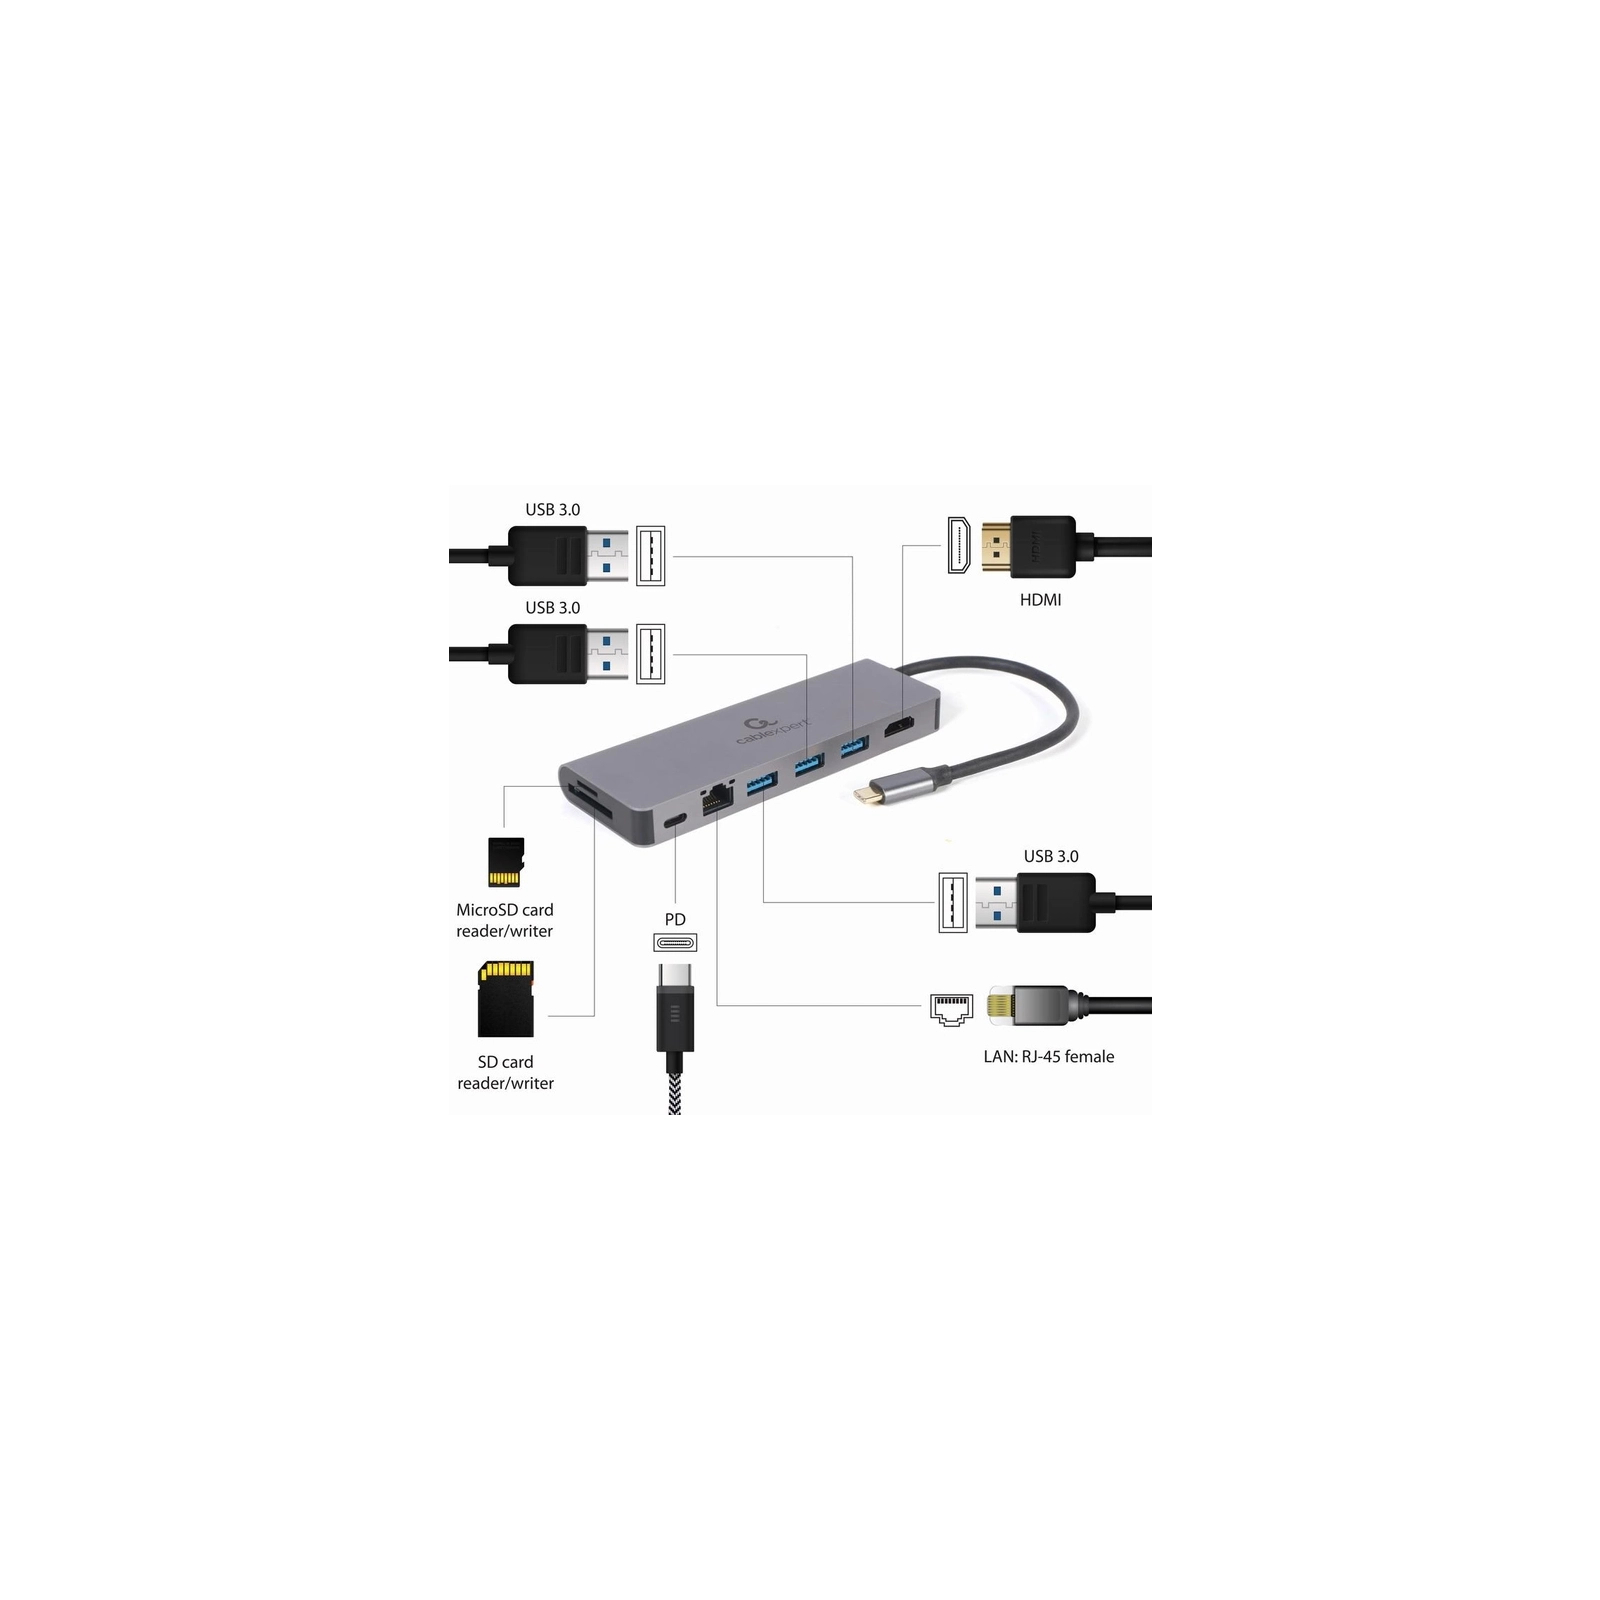 Концентратор Cablexpert USB-C 5-in-1 (A-CM-COMBO5-05) изображение 4